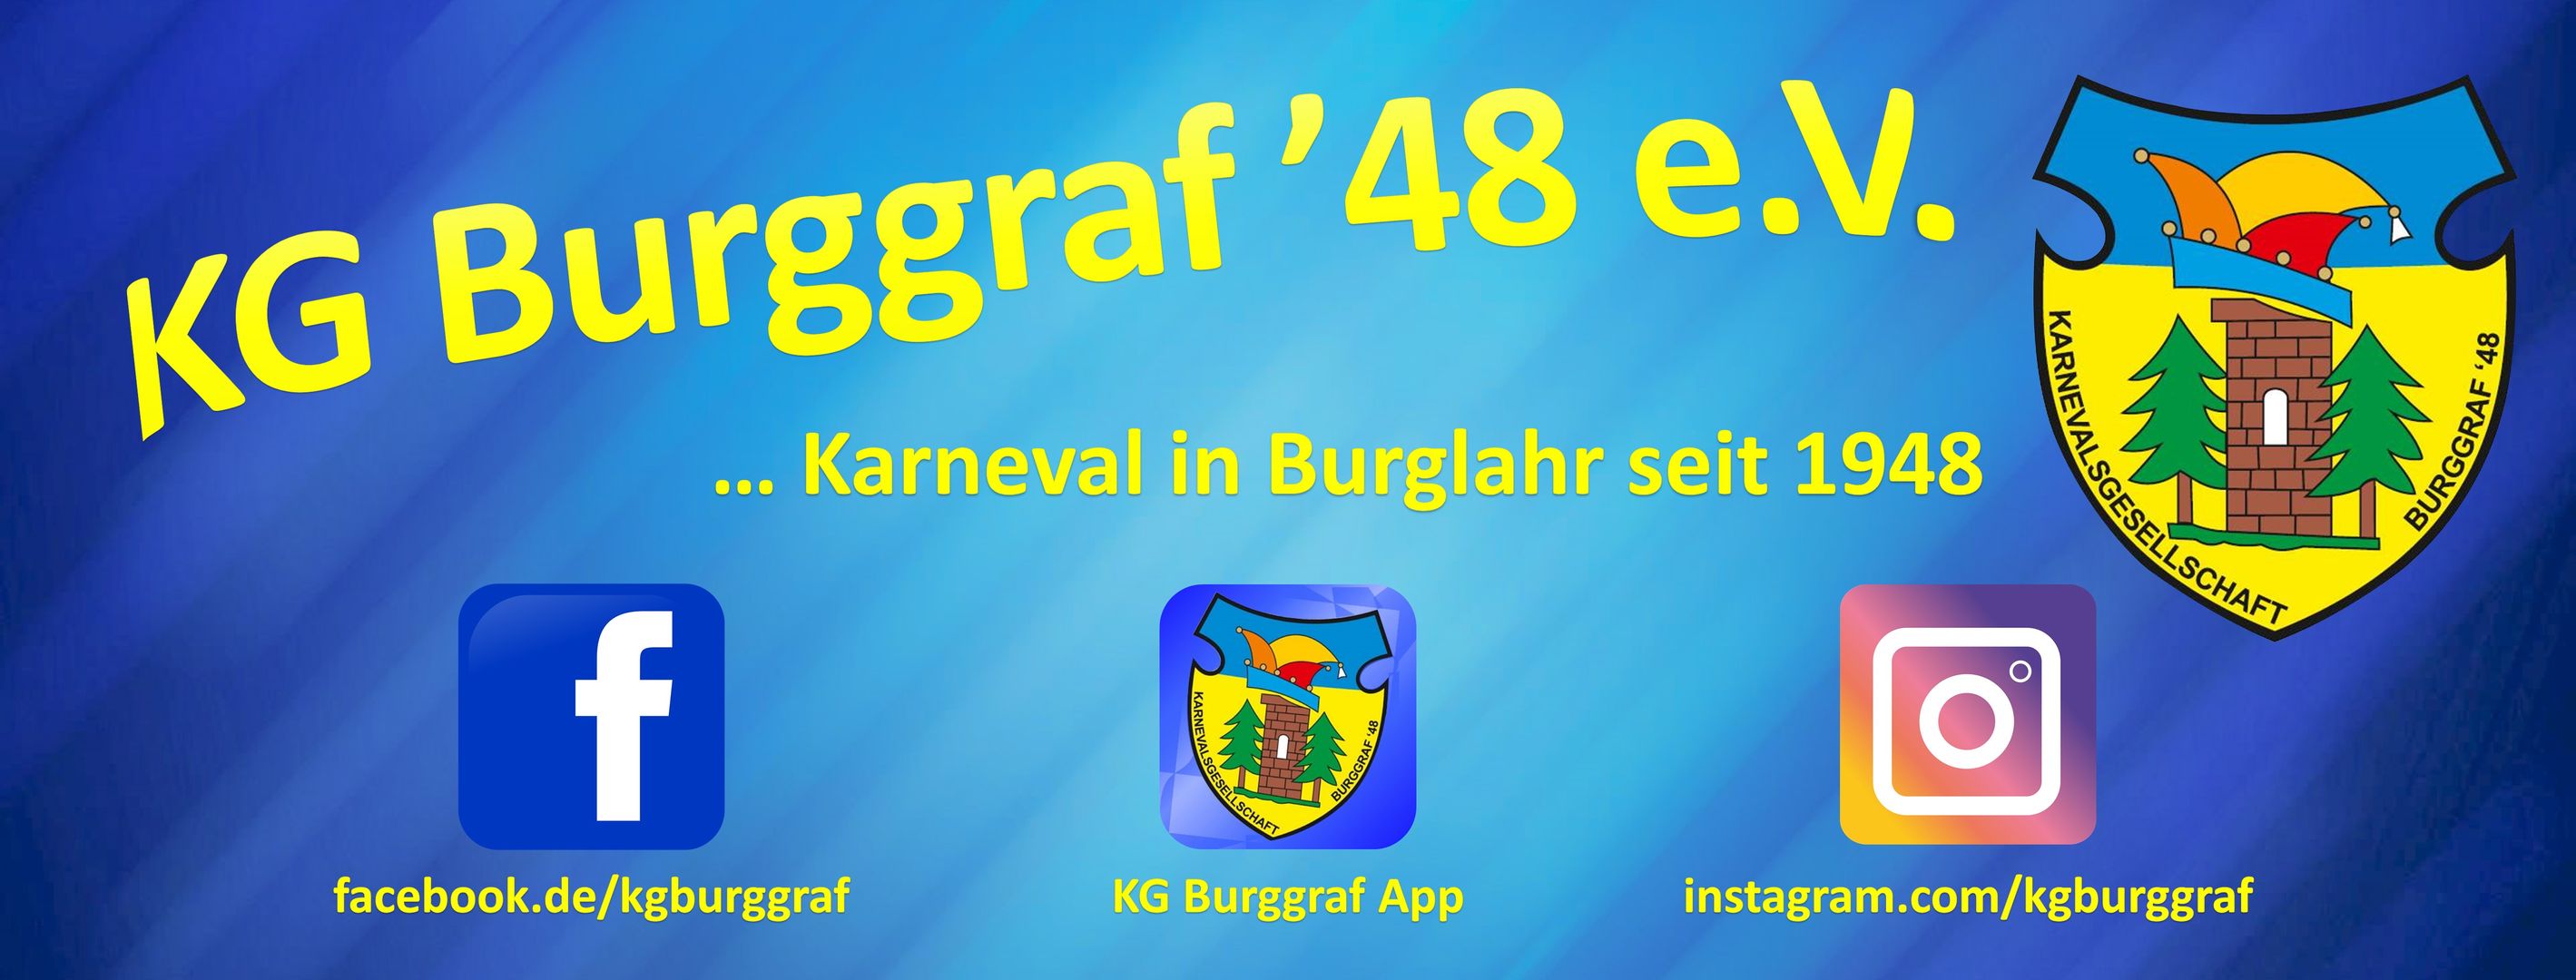 Kontakte | kg-burggraf